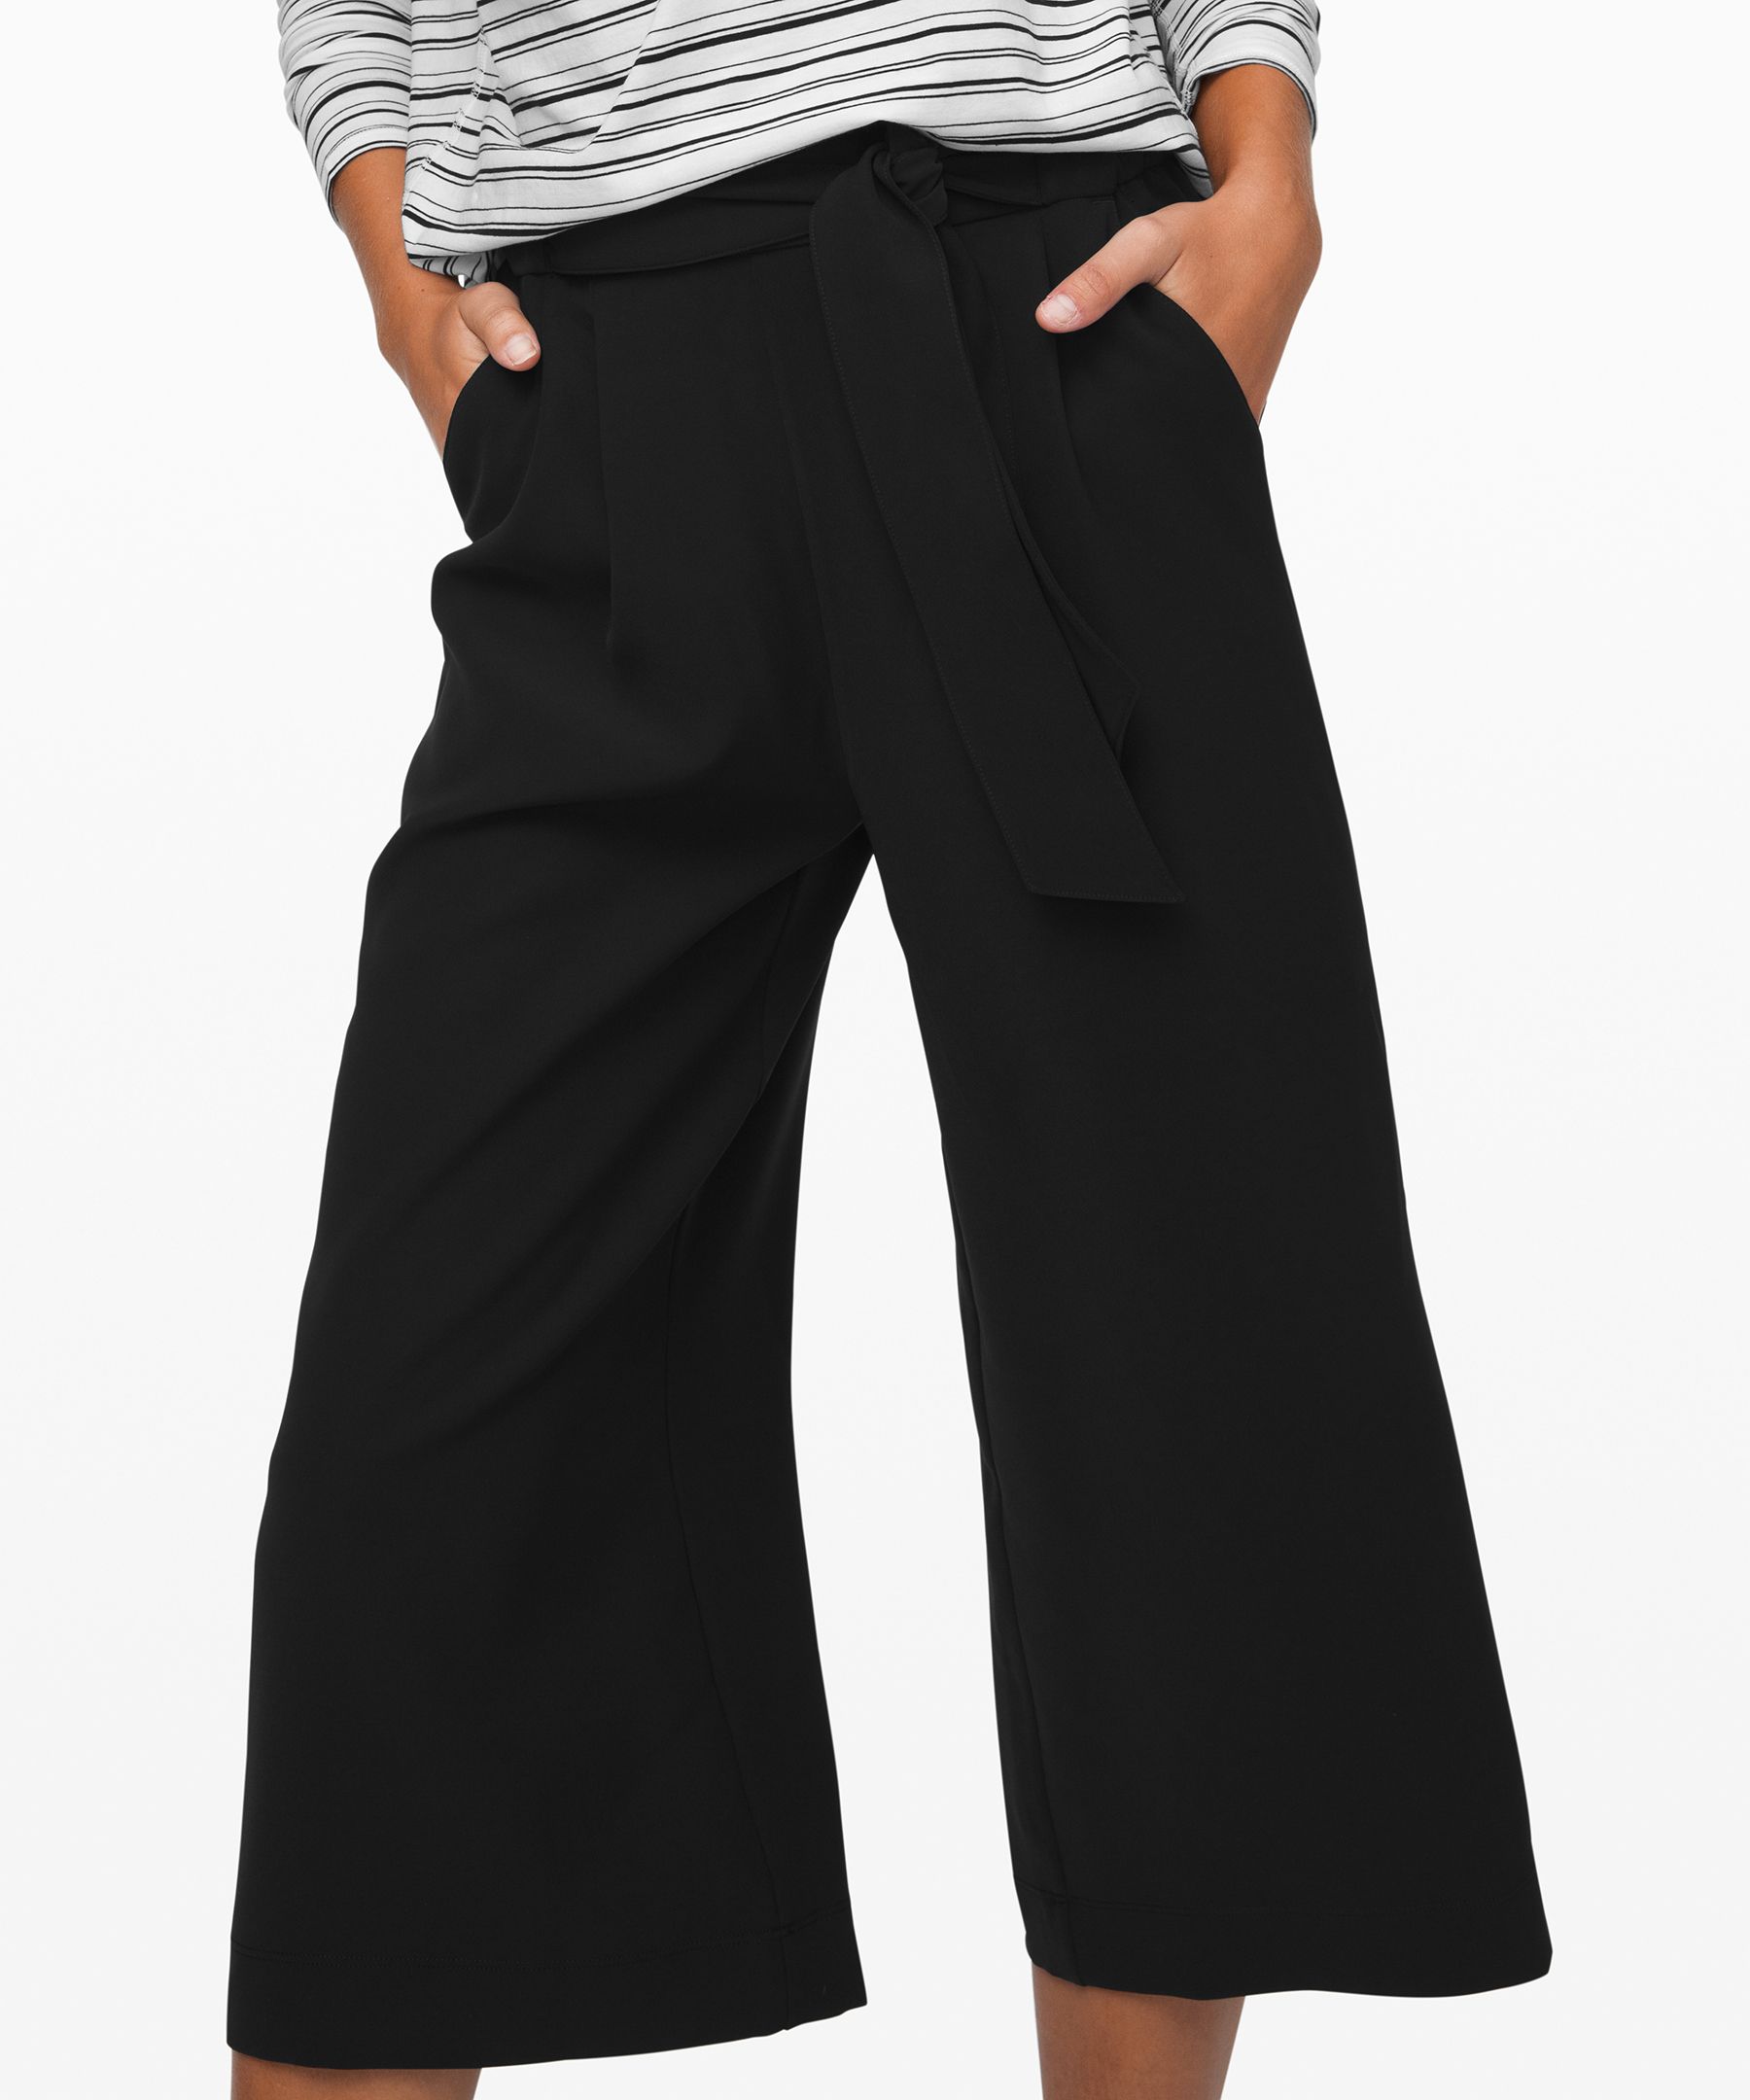 Lululemon Noir Crop Size 6 Black Pants High Waisted Belted Wide Leg  Lightweight